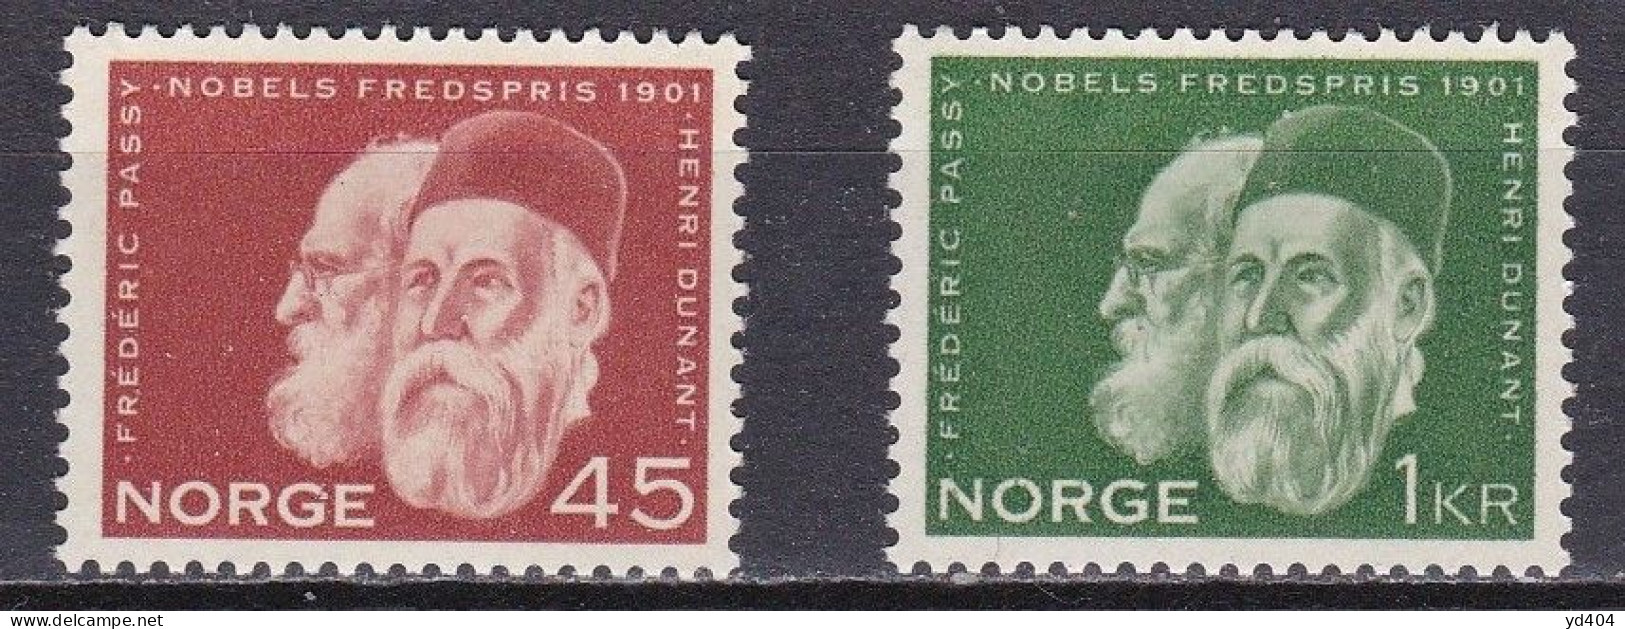 NO218B – NORVEGE - NORWAY – 1961 – NOBEL PEACE PRIZE – SG # 520/1 MNH - Neufs